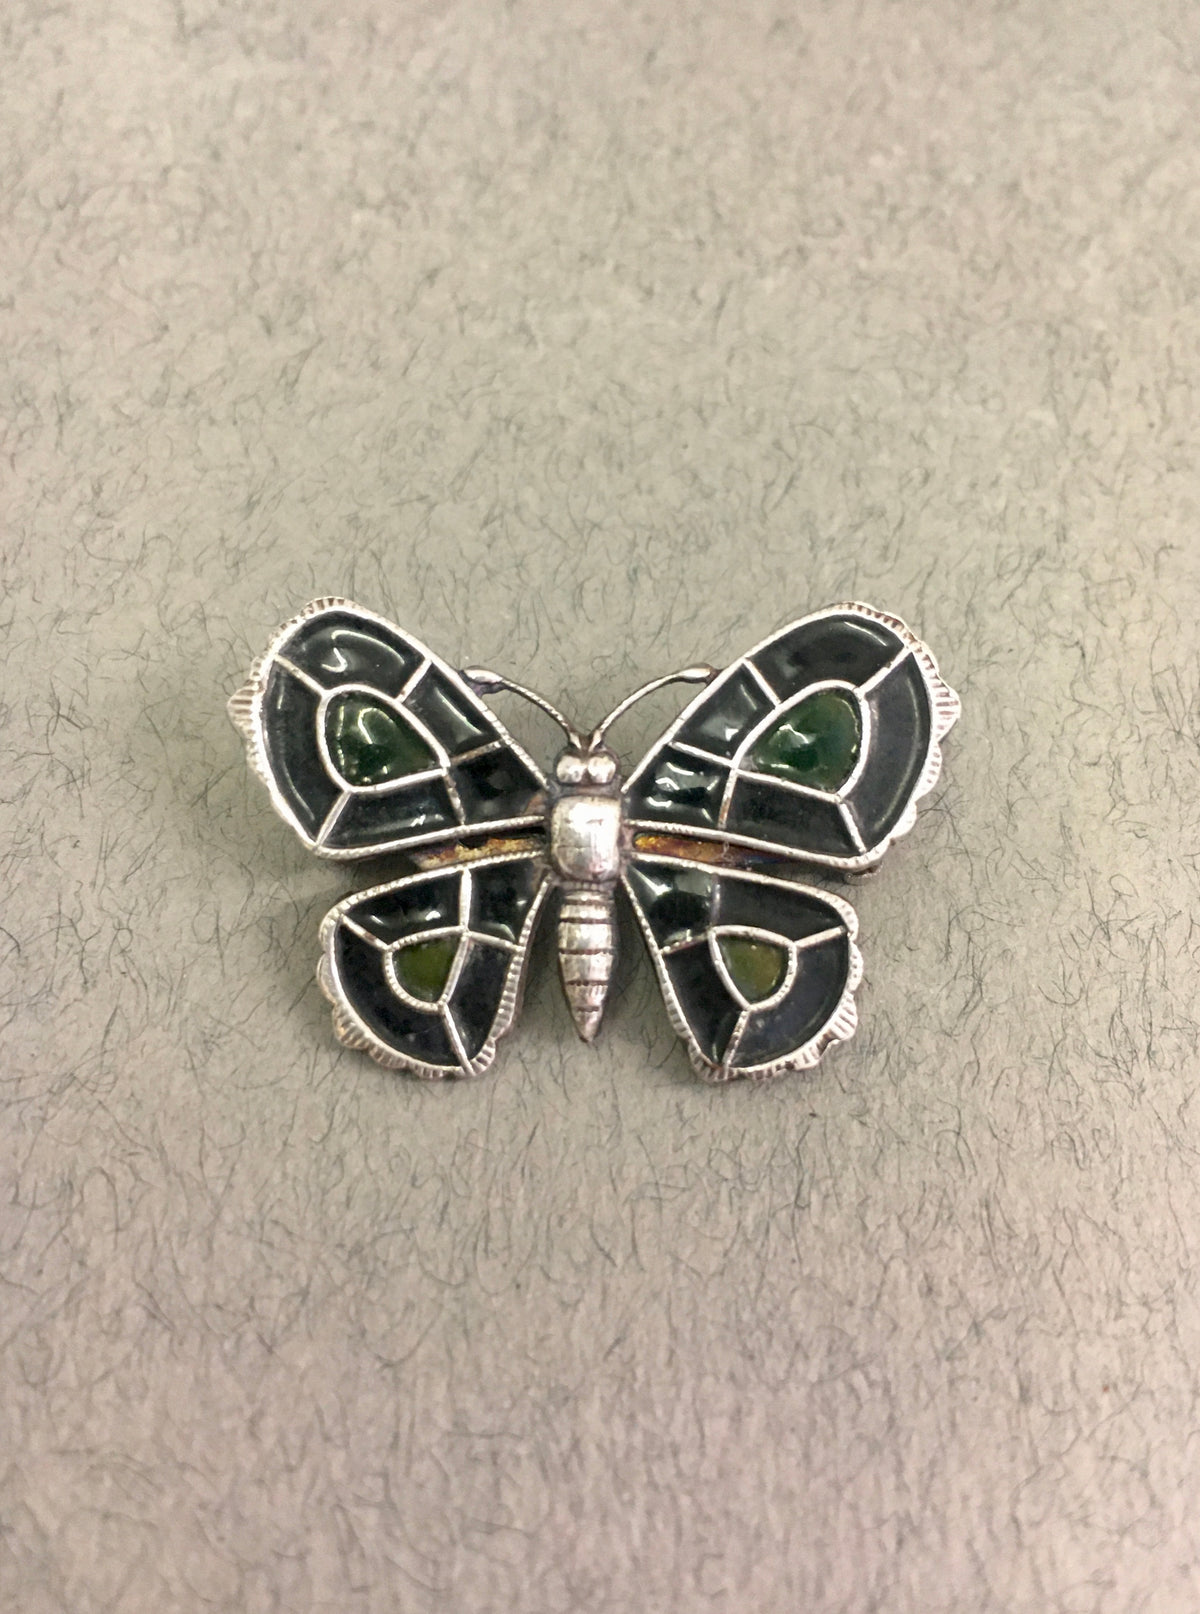 Green and Black Enamel Butterfly Brooch by Jess Lelong